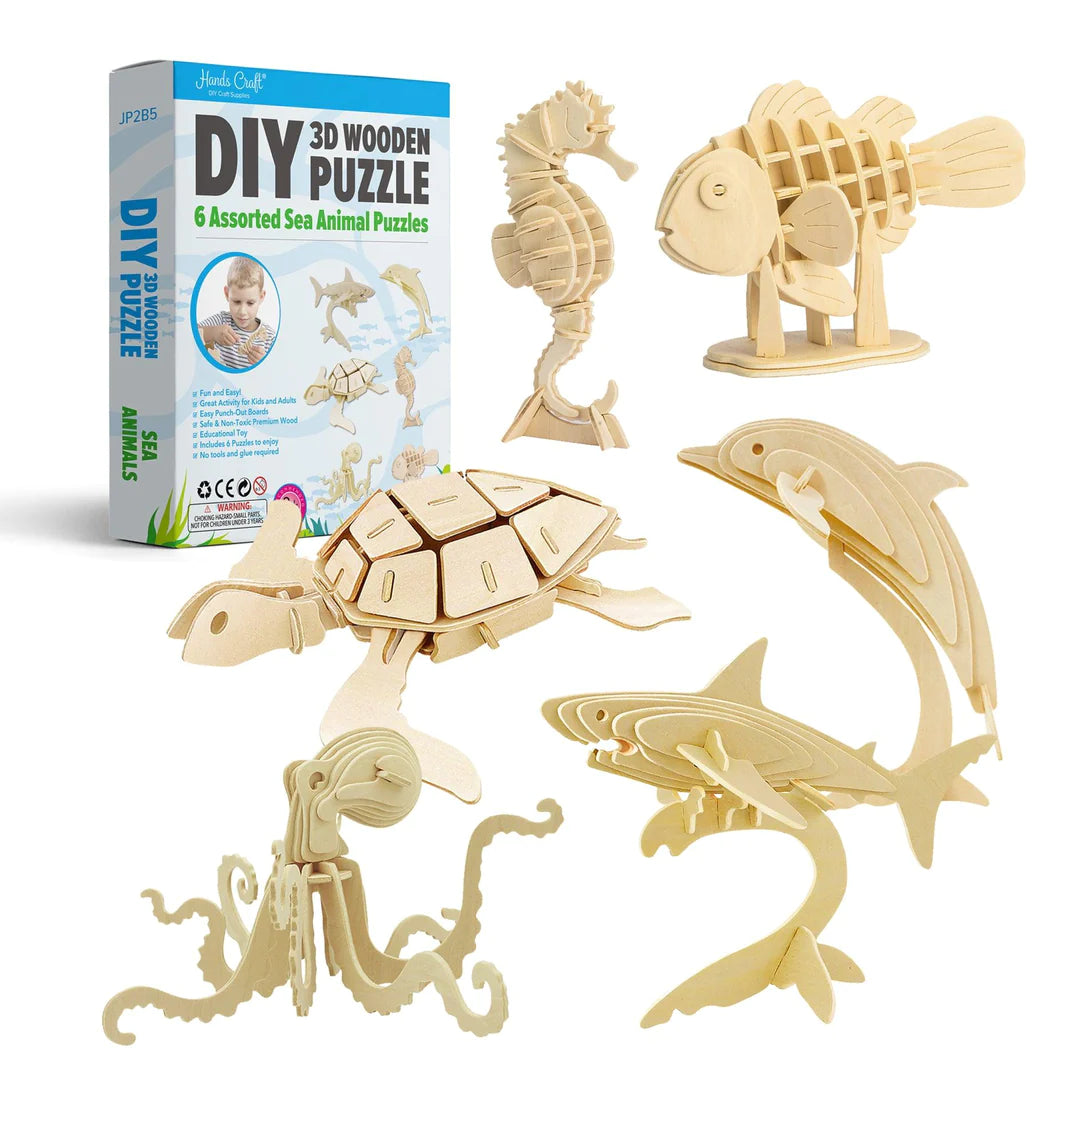 DIY 3D Wooden Puzzle: Sea Animals